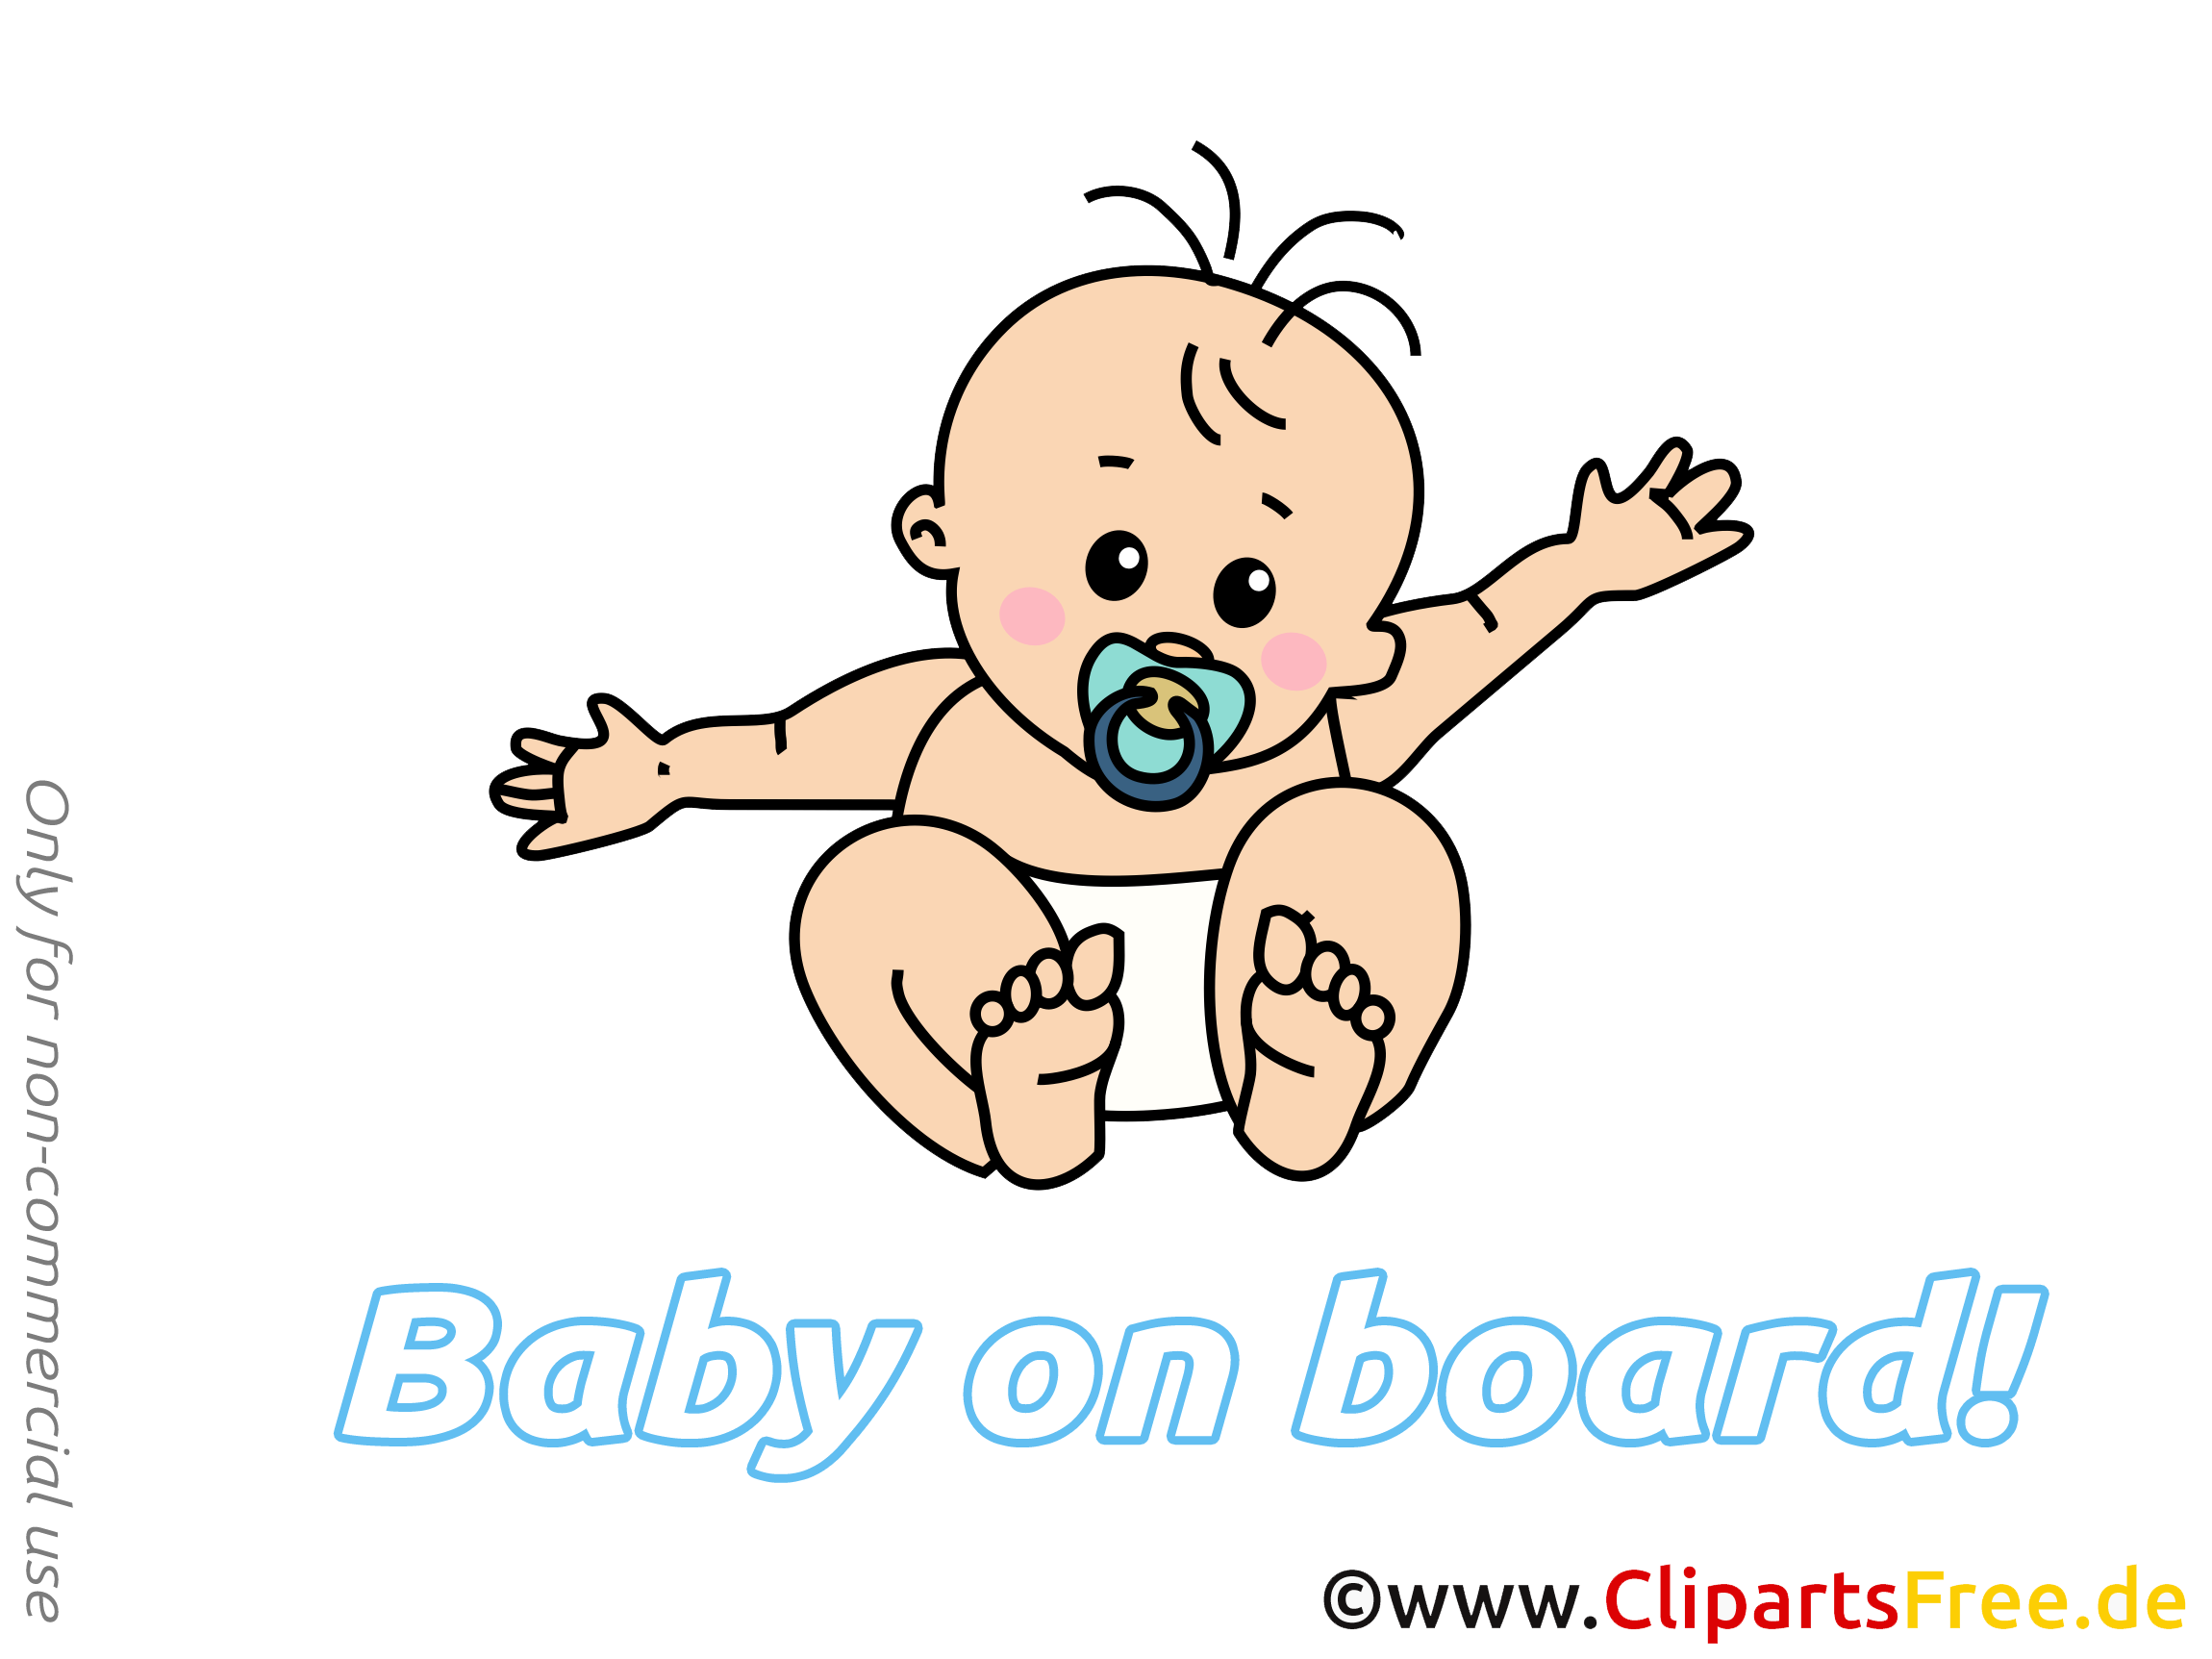 clipart gratuit bébé - photo #11